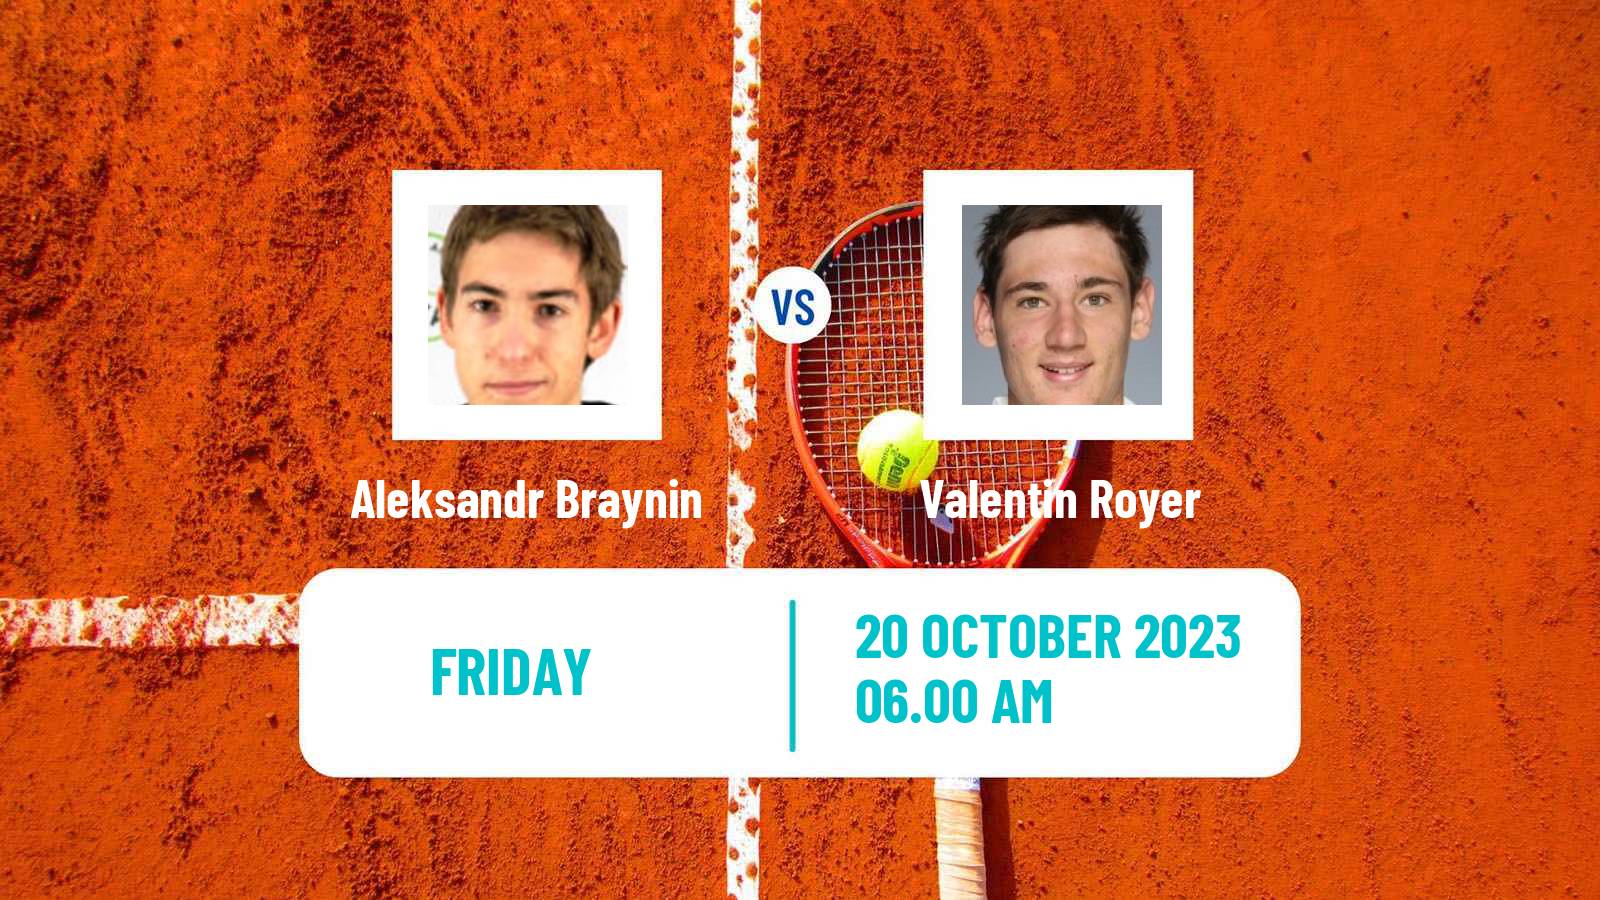 Tennis ITF M25 Tavira 2 Men Aleksandr Braynin - Valentin Royer